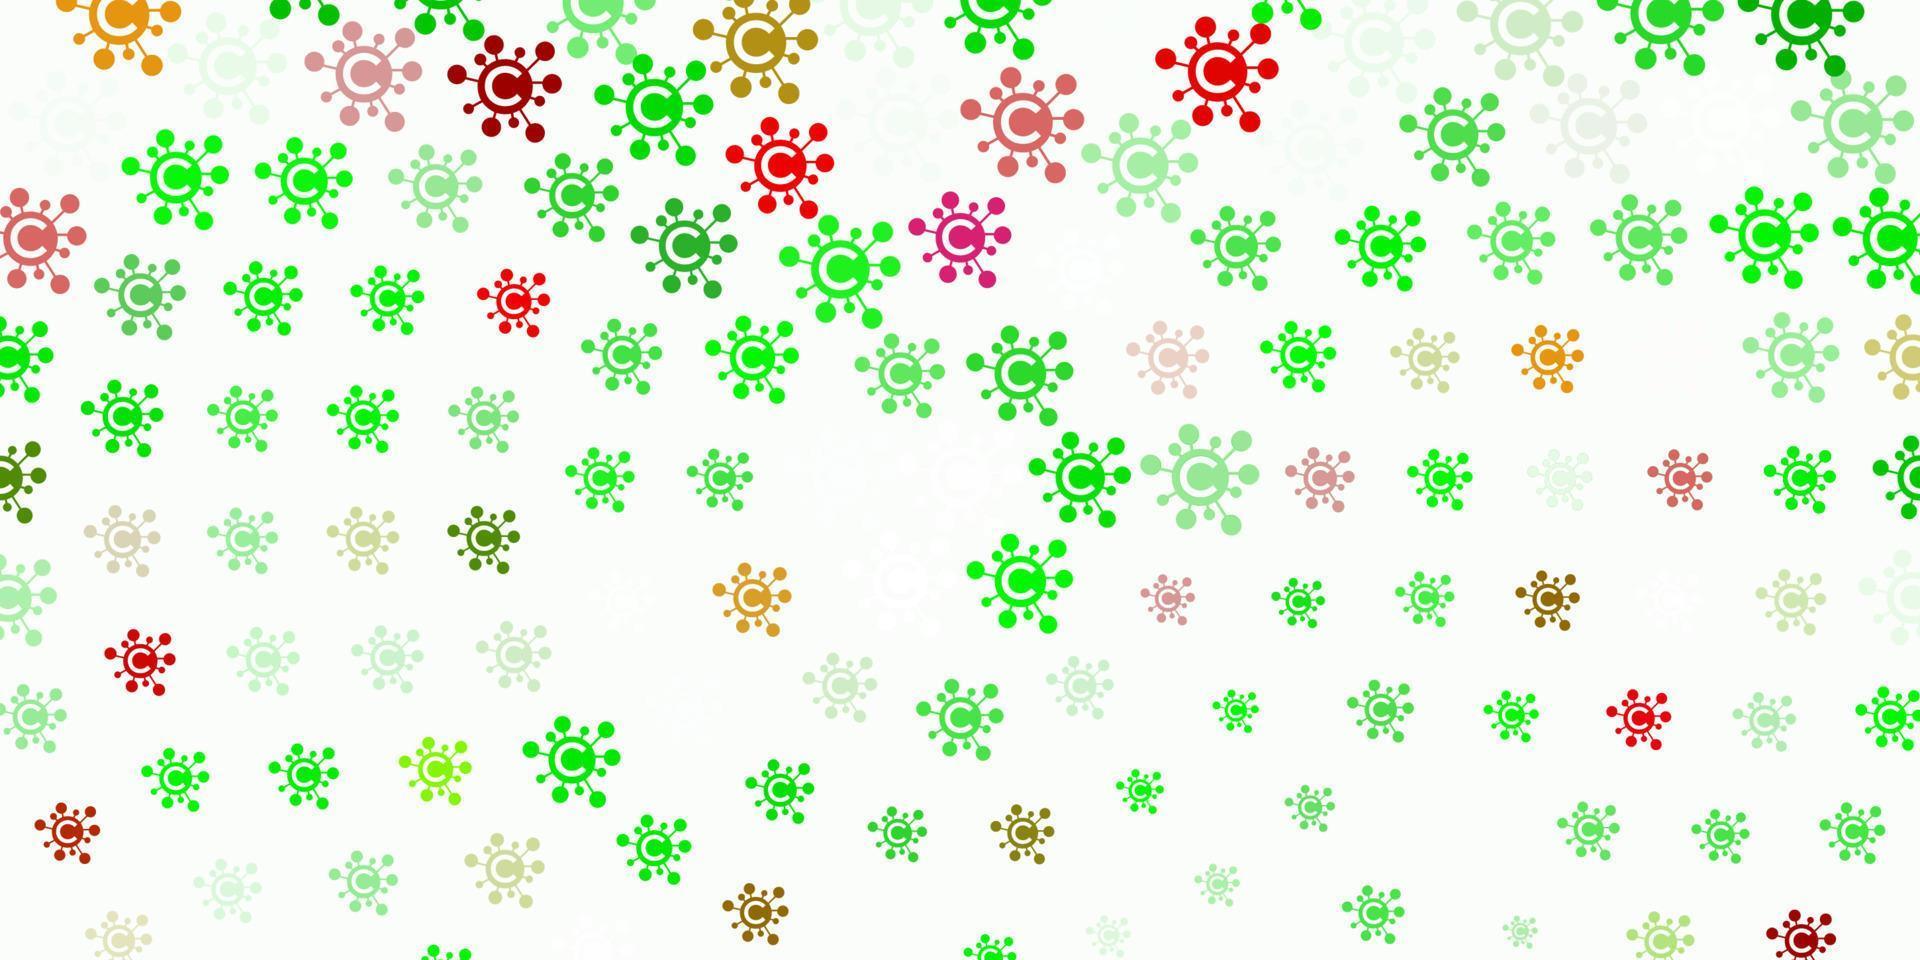 pano de fundo de vetor verde e vermelho claro com símbolos de vírus.